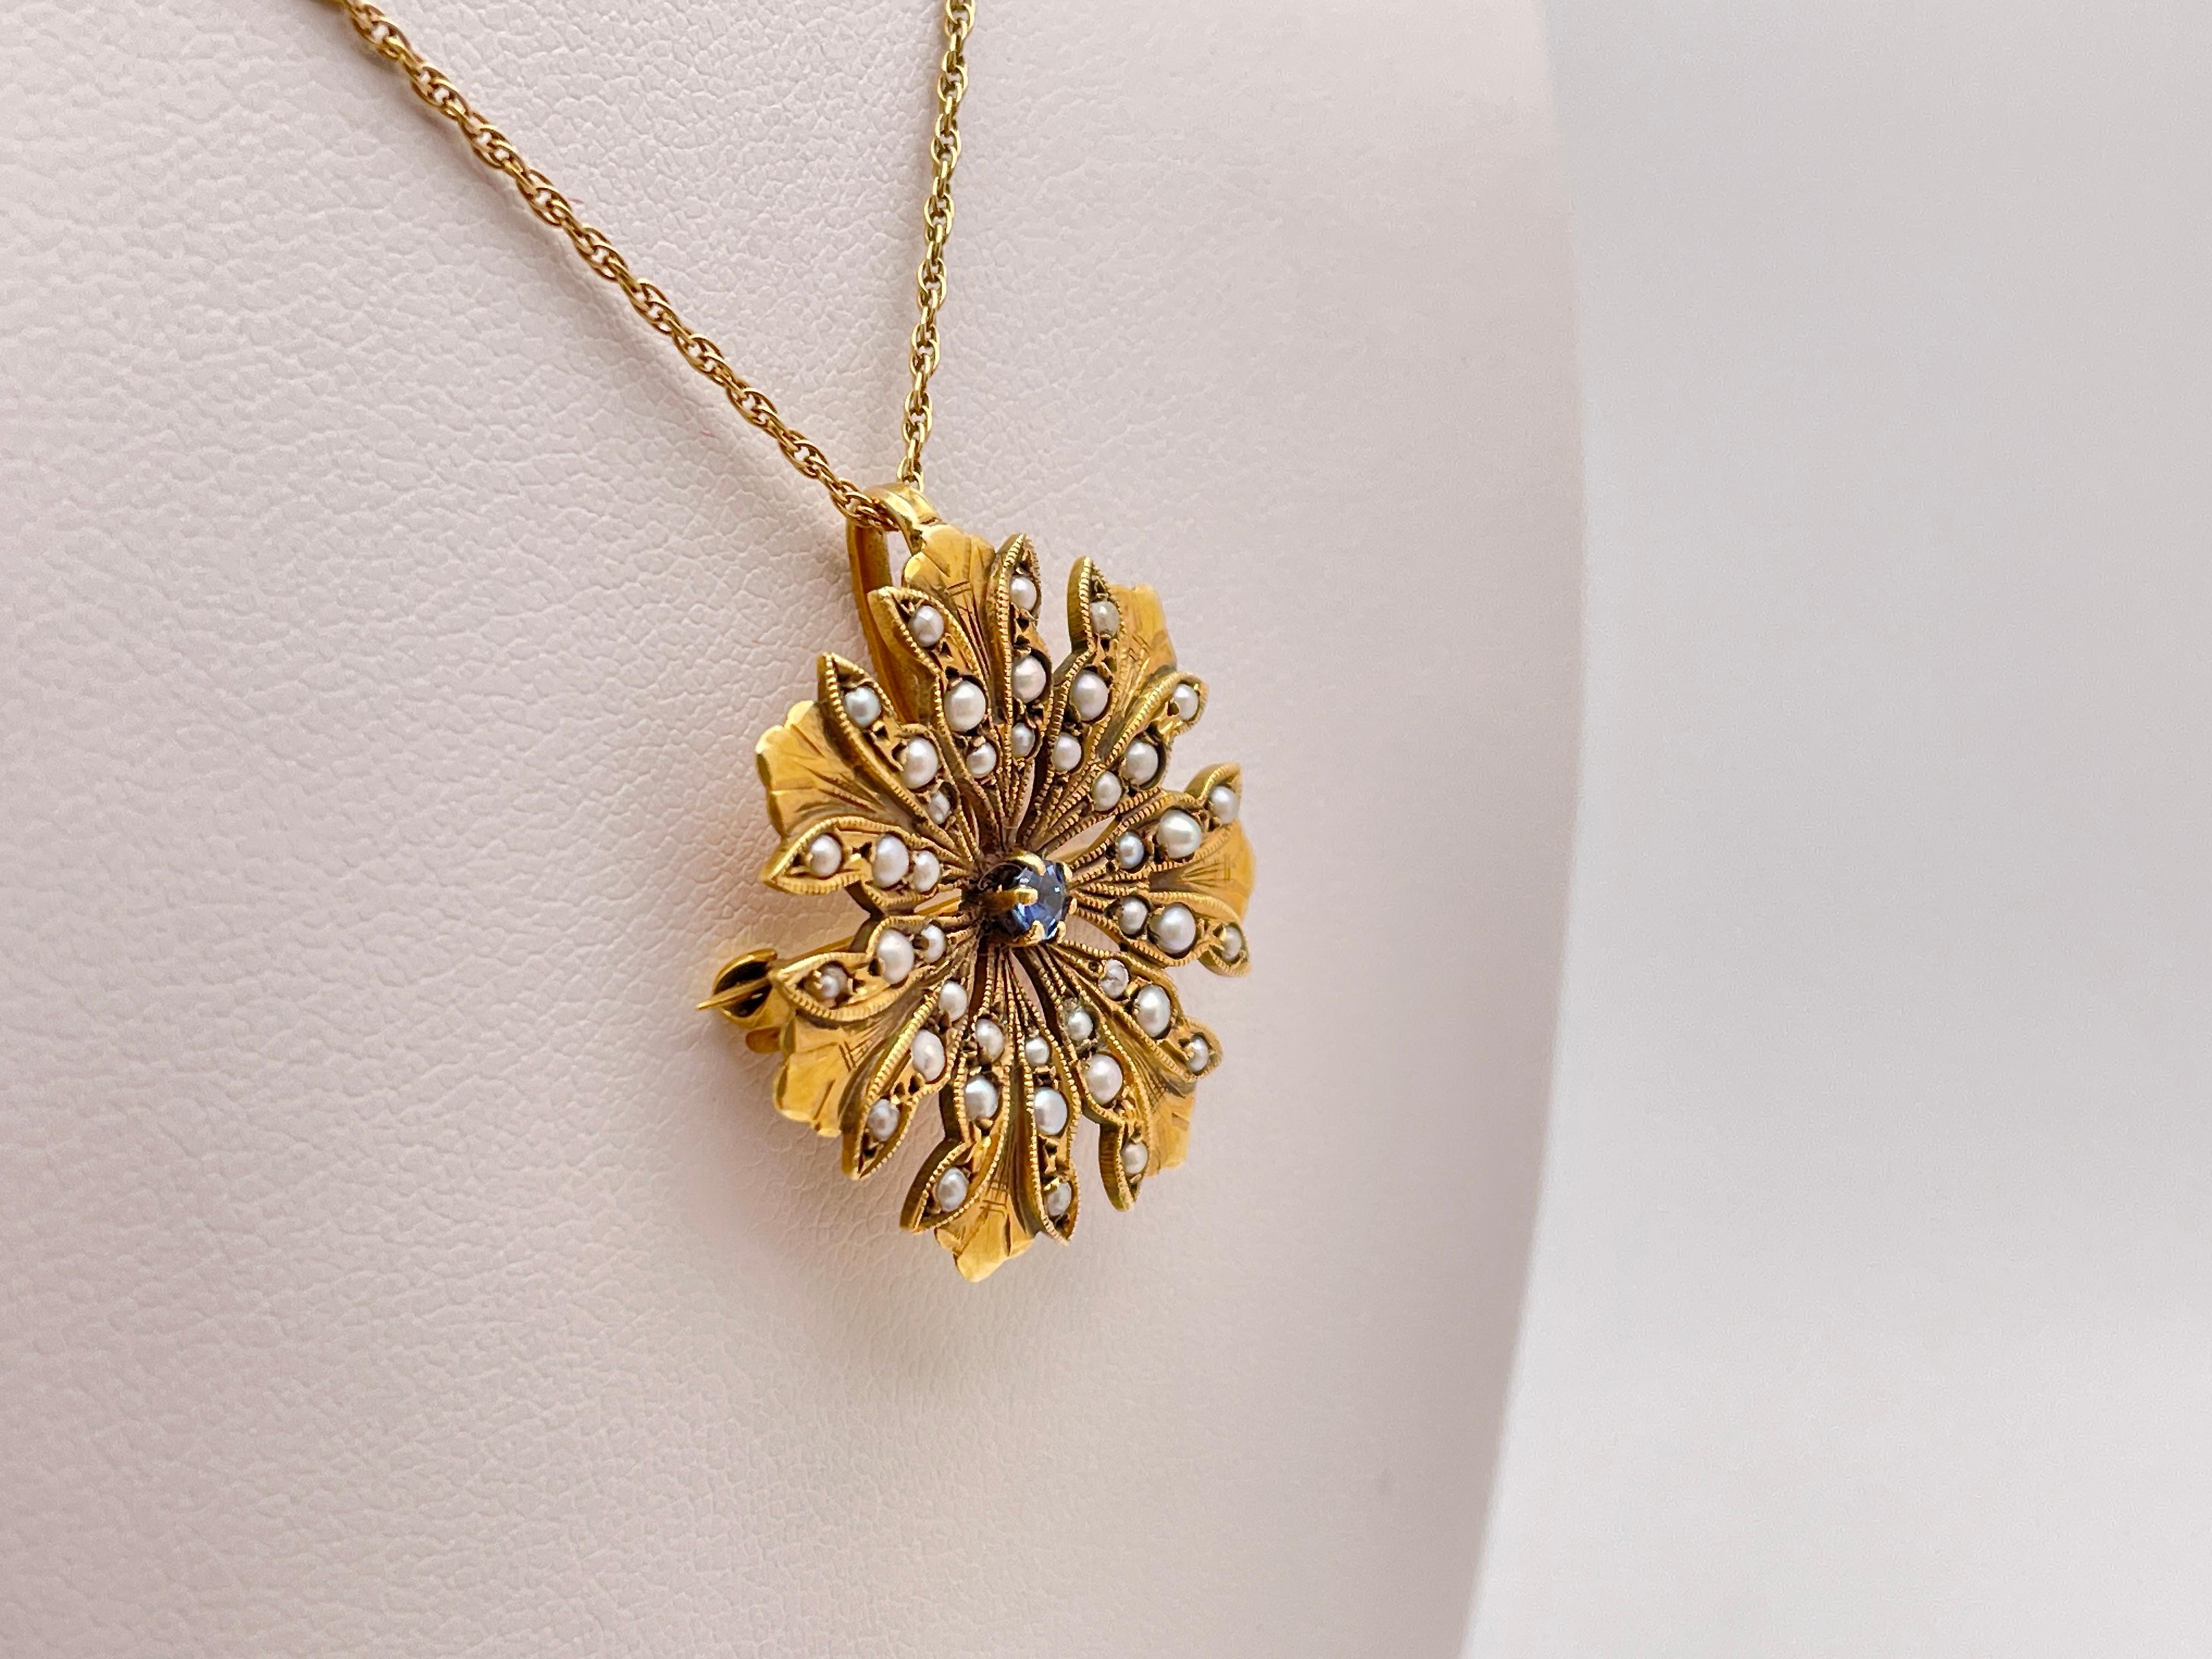 Eine originale viktorianische Brosche aus 14 Karat Gelbgold mit Saphiren und Perlen (Anstecknadel/Anhänger). Das florale Design ist mit runden weißen Perlen verziert und wird von einem wunderschönen blauen Saphir im Rundschliff mit einem Gewicht von